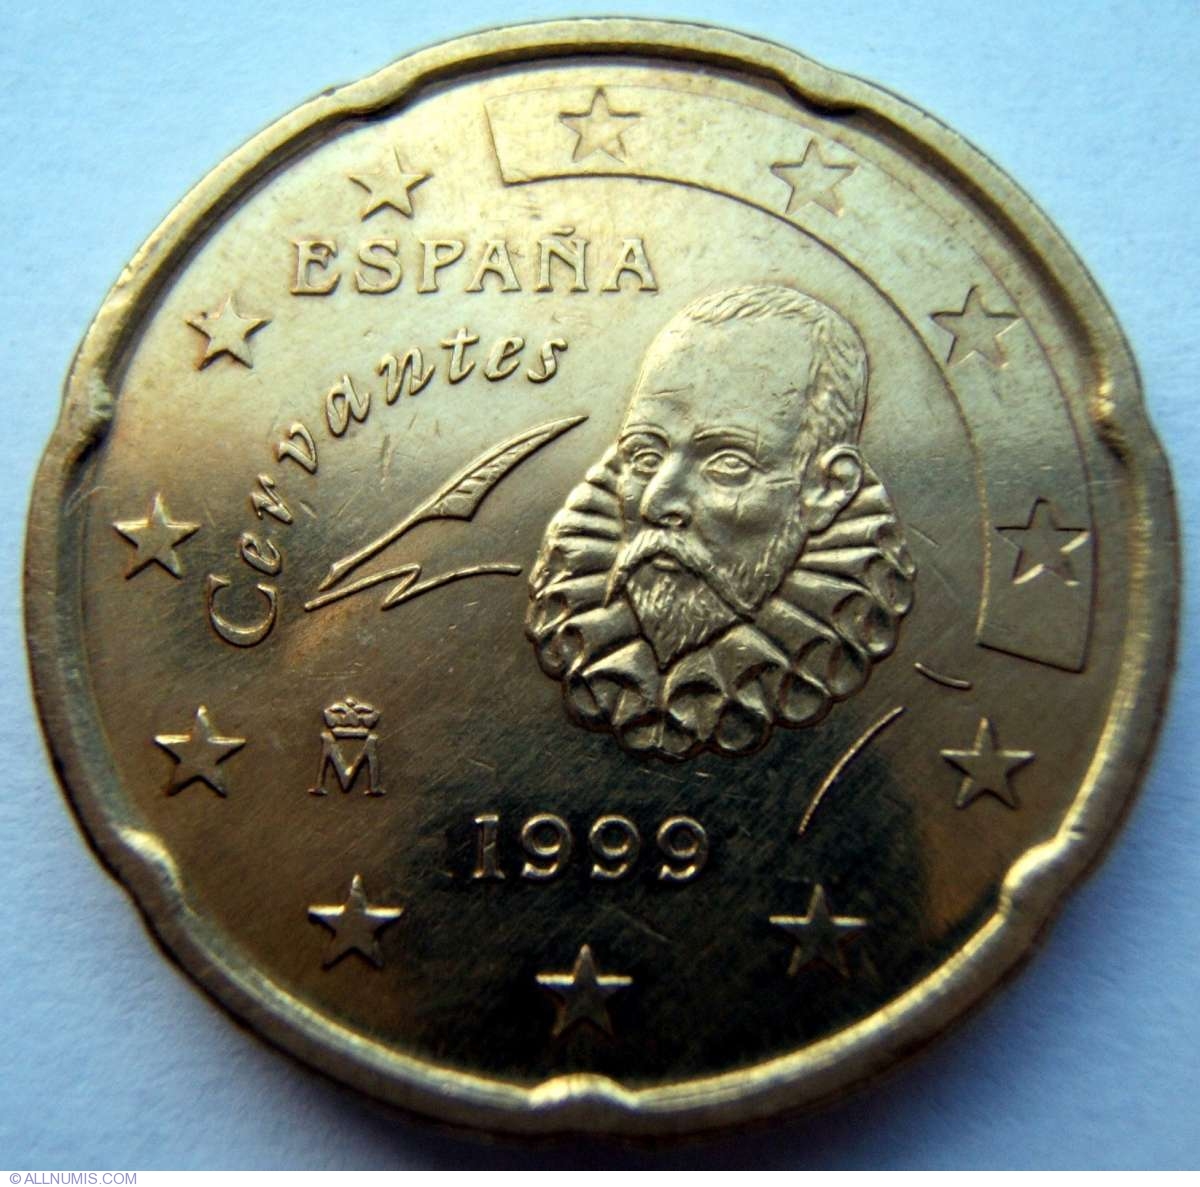 20 euro cent 1999 espana